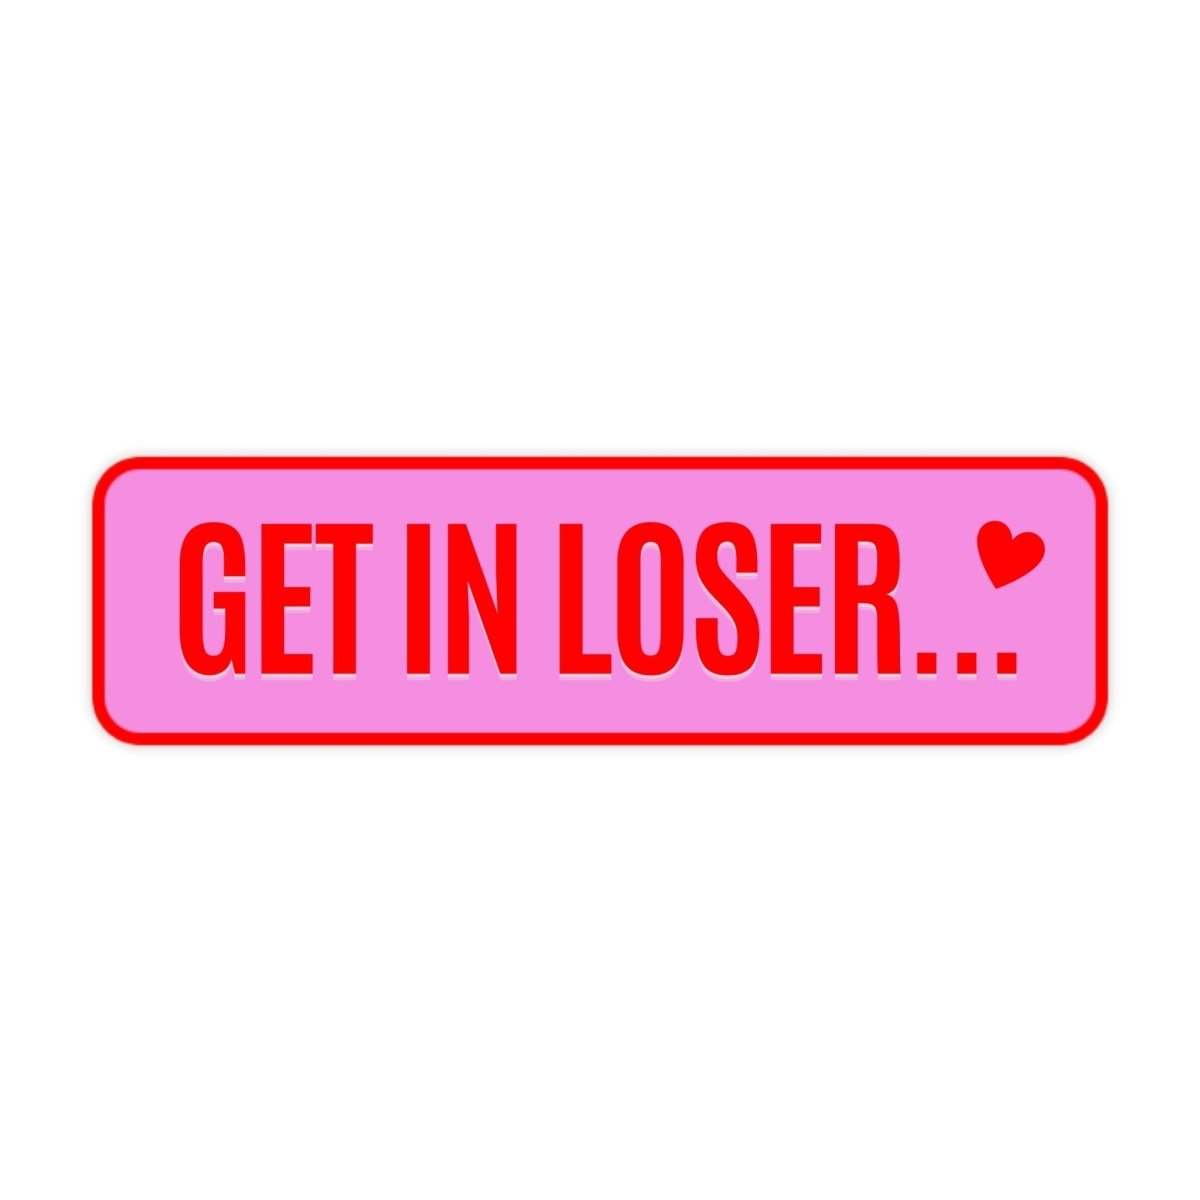 Get In Loser Bumper Sticker - stickerbullGet In Loser Bumper StickerRetail StickerstickerbullstickerbullSage_GetInLoser [#107]Get In Loser Bumper Sticker